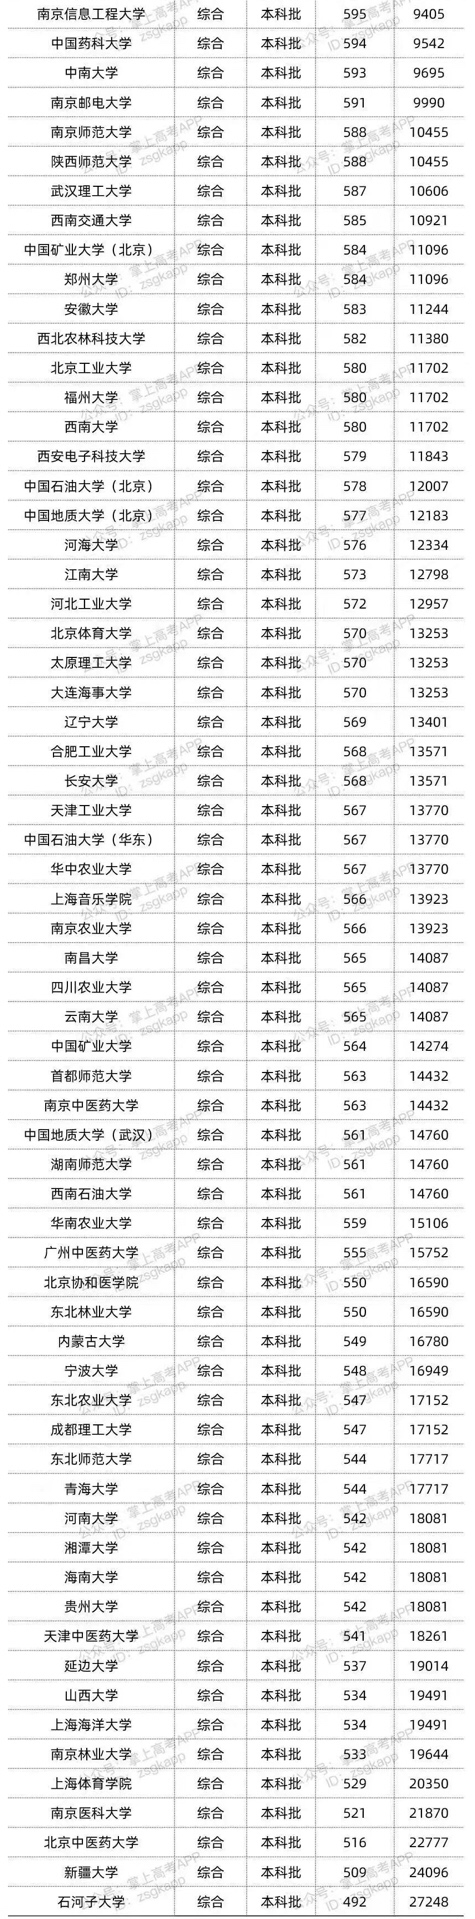 北京双一流综合类最低录取位次汇总2.jpg